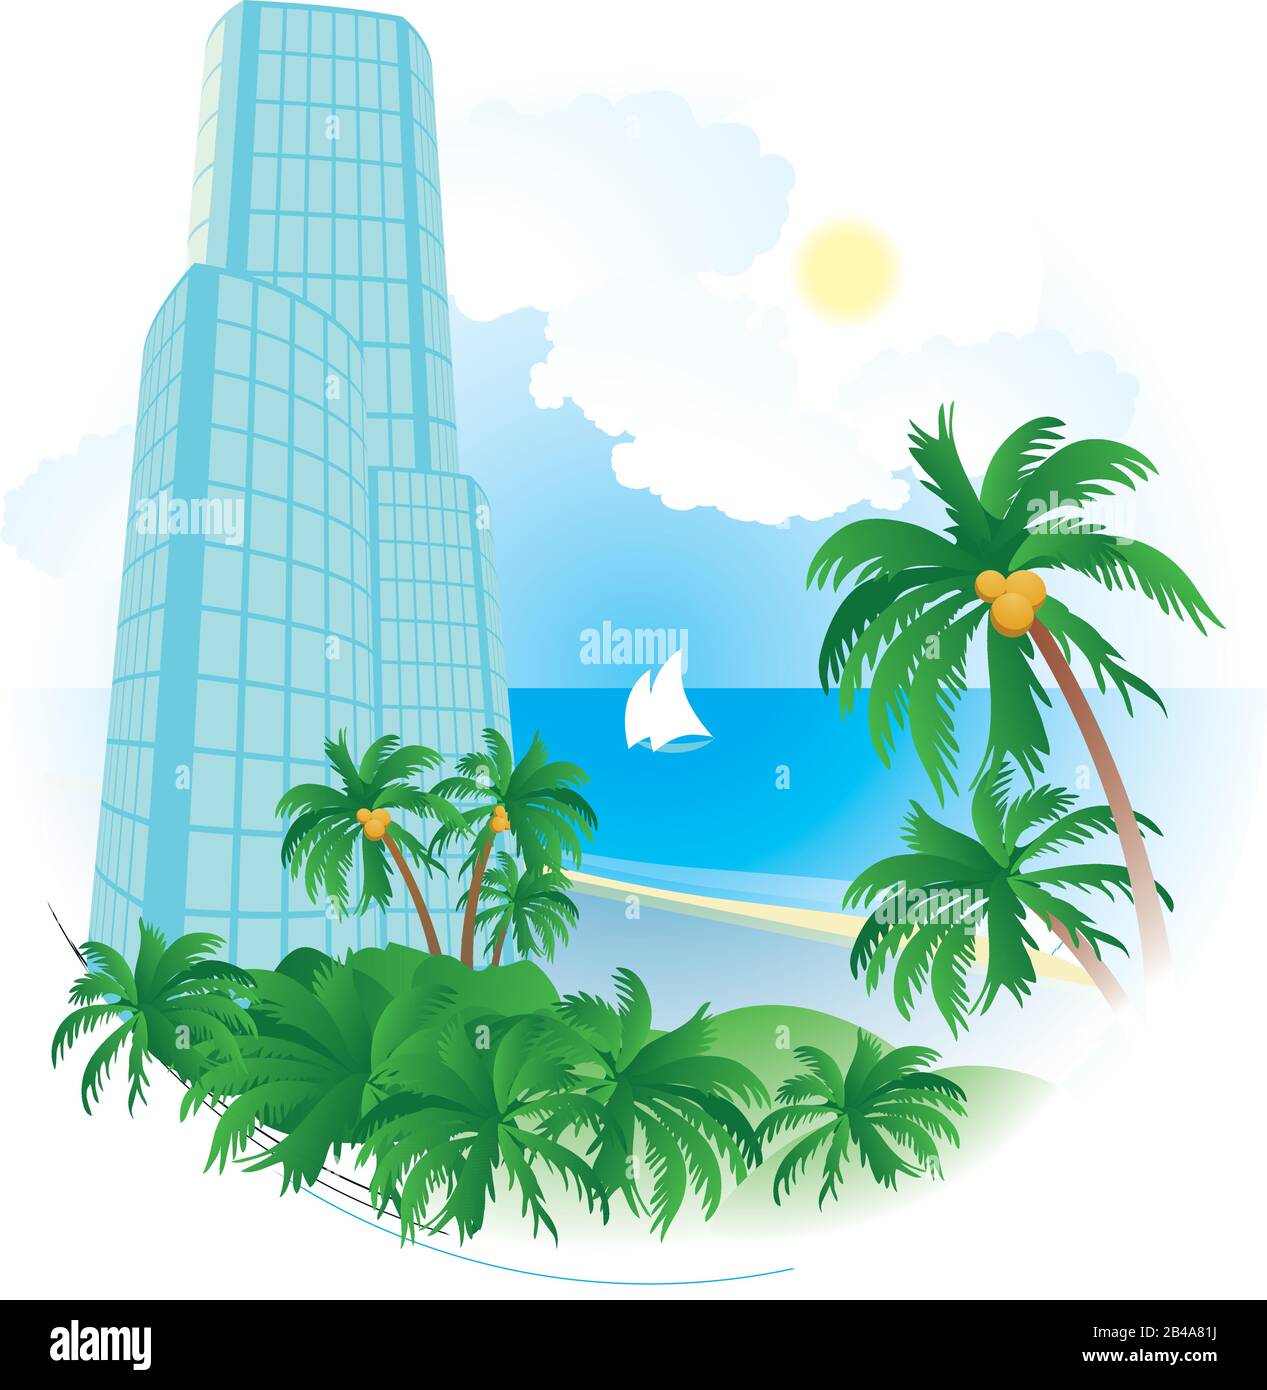 Abbildung: Hotel mit Palmen, Meer und Strand, mit schönem Hintergrund Stock Vektor